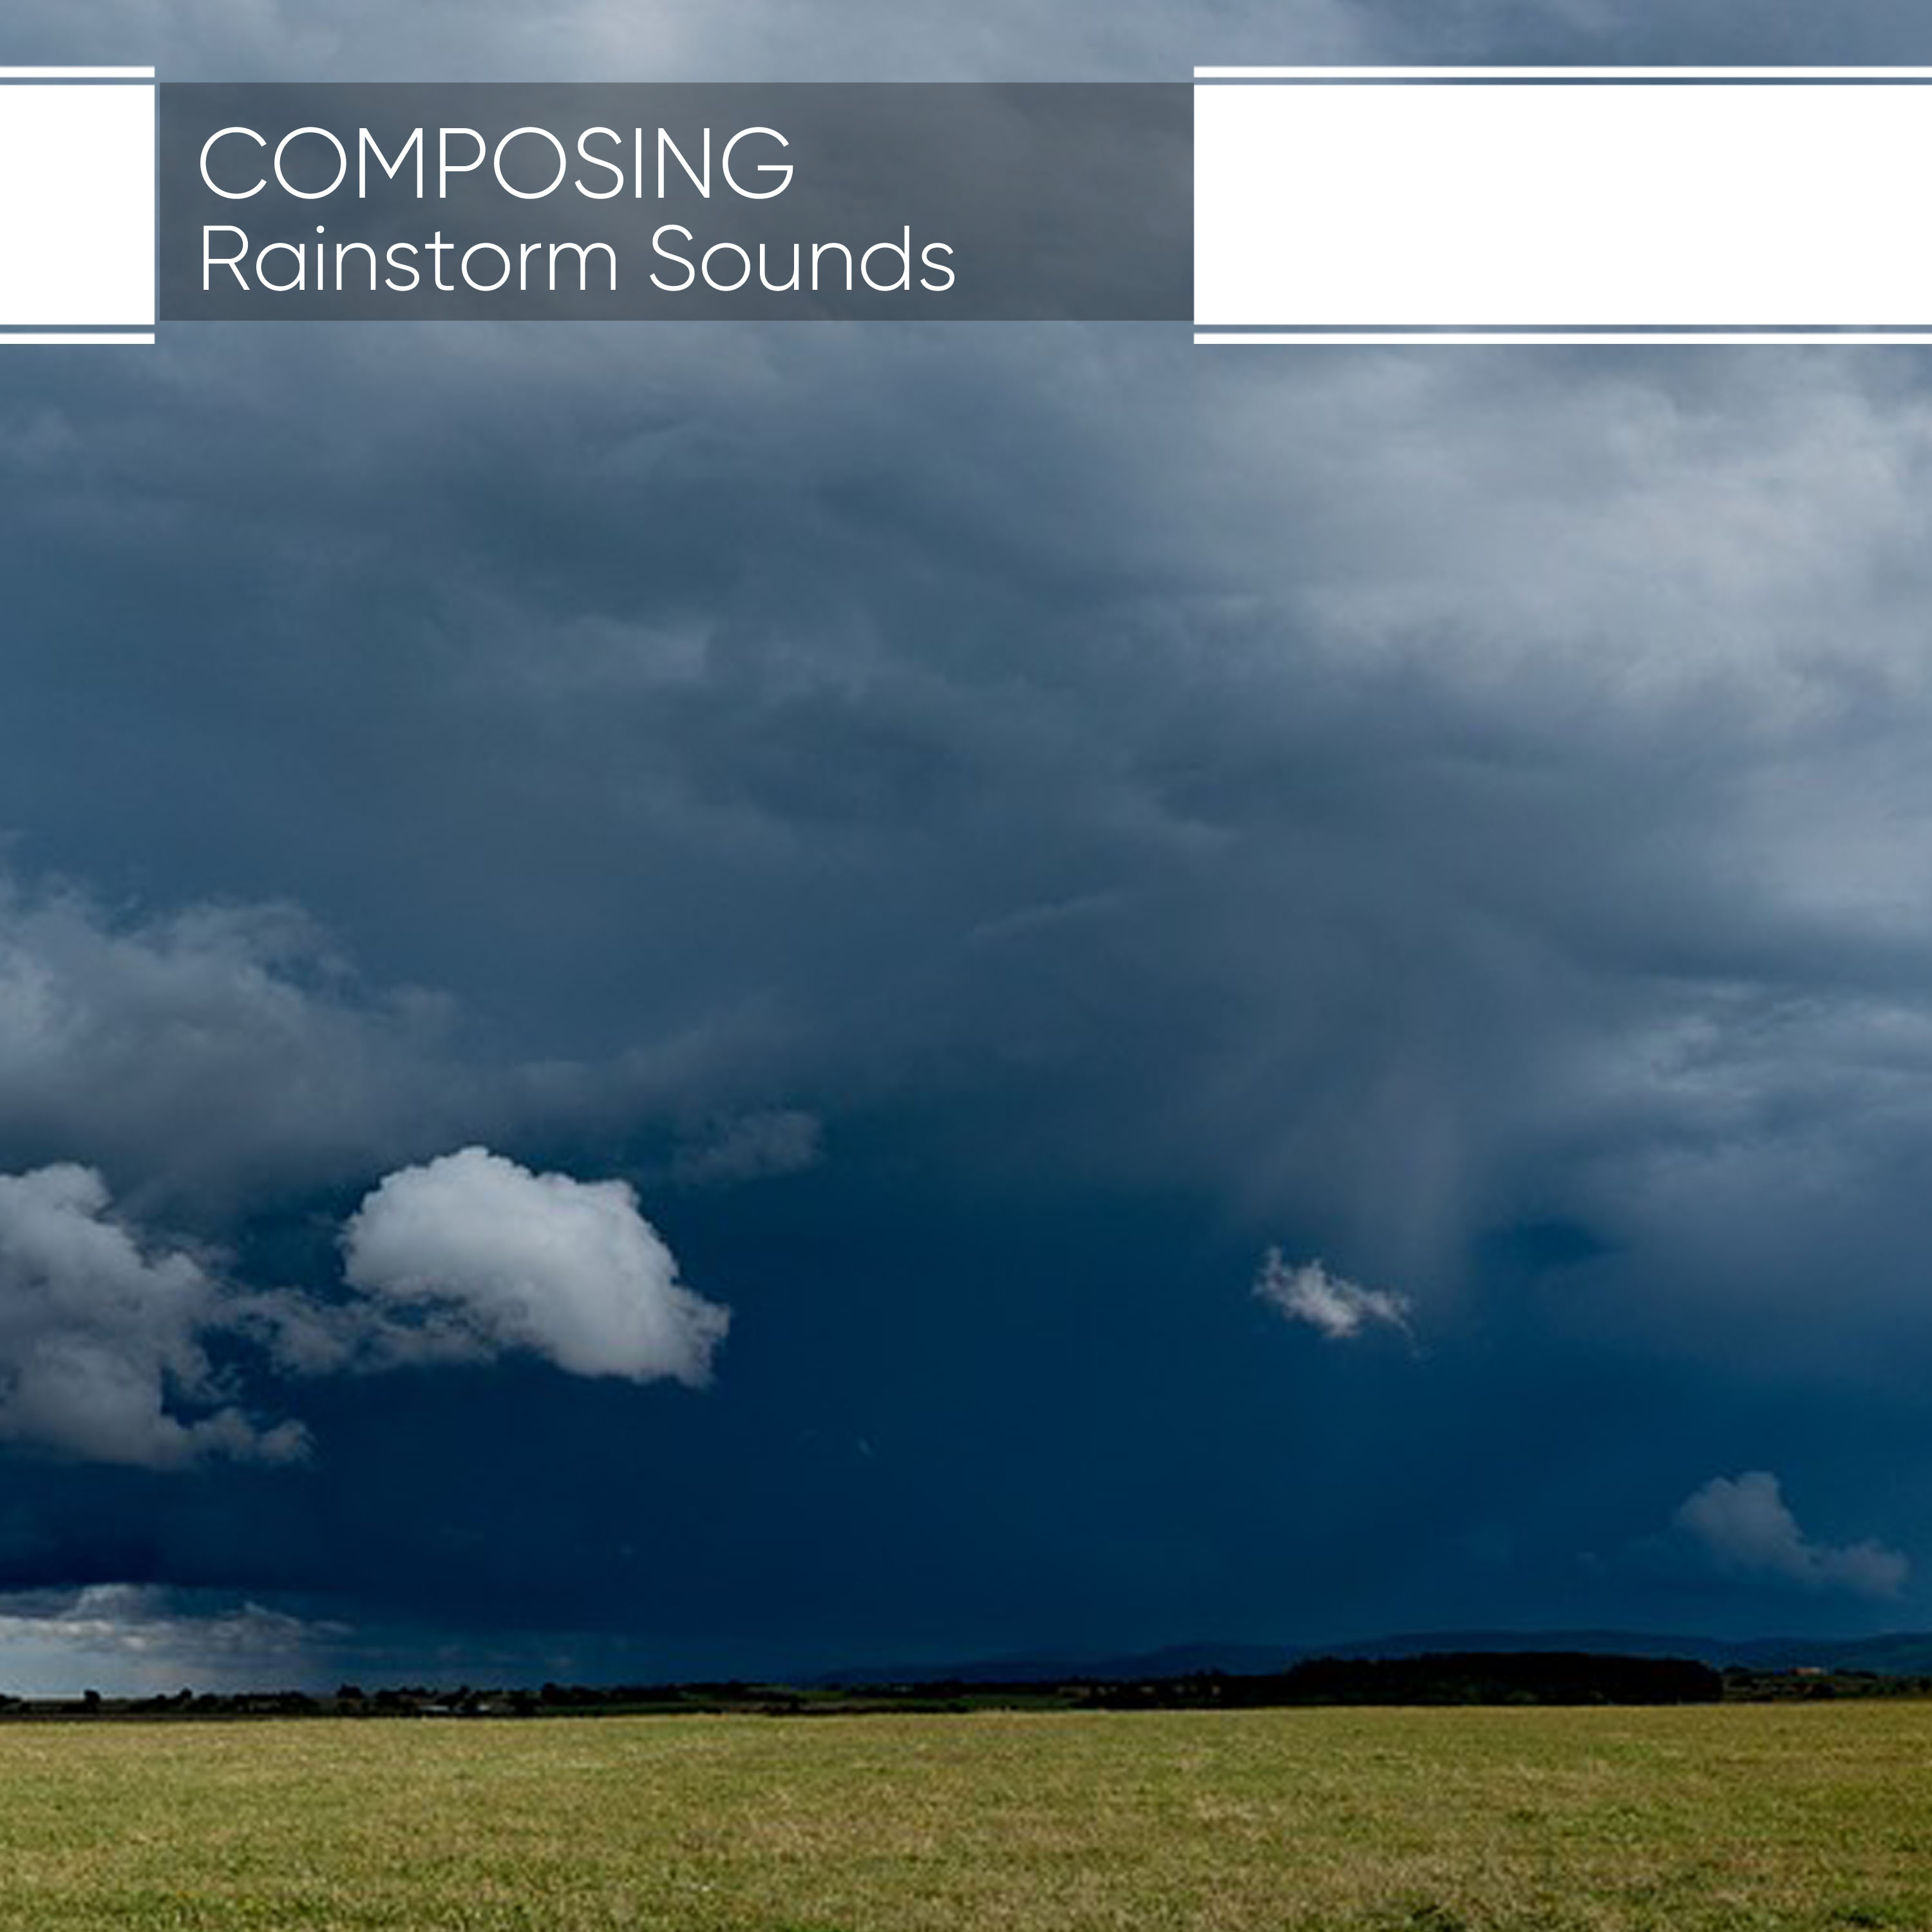 Composing Rainstorm Sounds